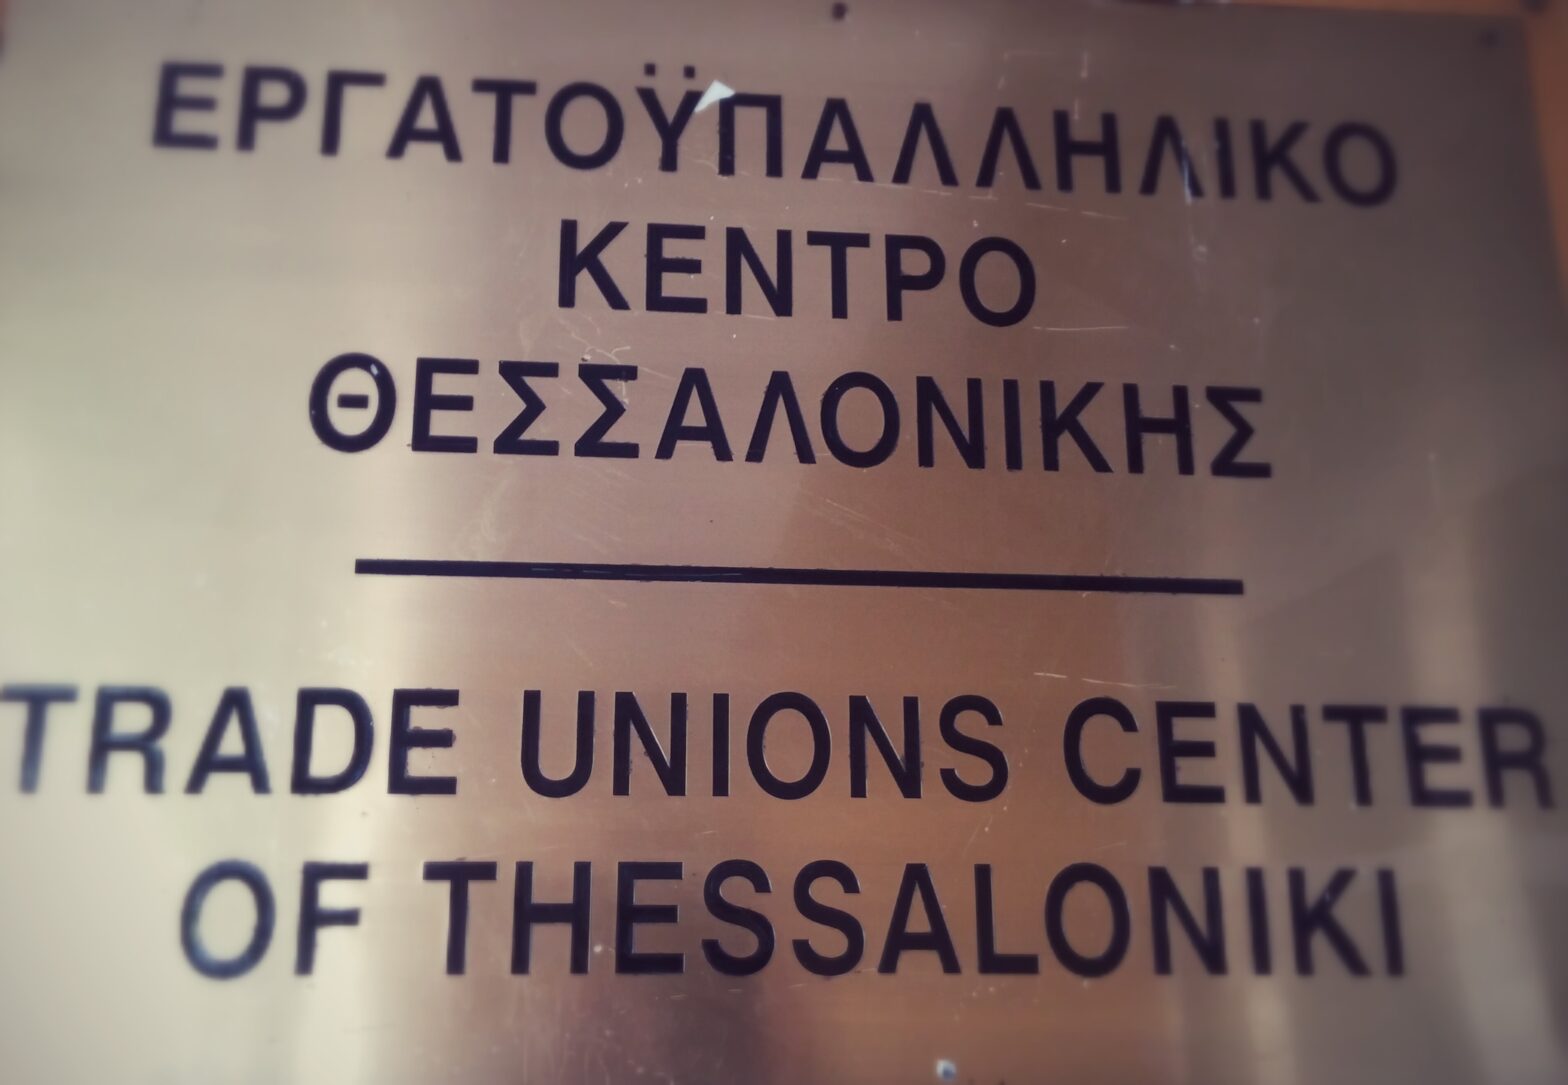 Σύσκεψη Εργατικών Κέντρων Κεντρικής και Δυτικής Μακεδονίας  με θέμα: "Συντονισμός για την Απεργία στις 8 Δεκεμβρίου 2016". Η παρουσία όλων απαραίτητη.